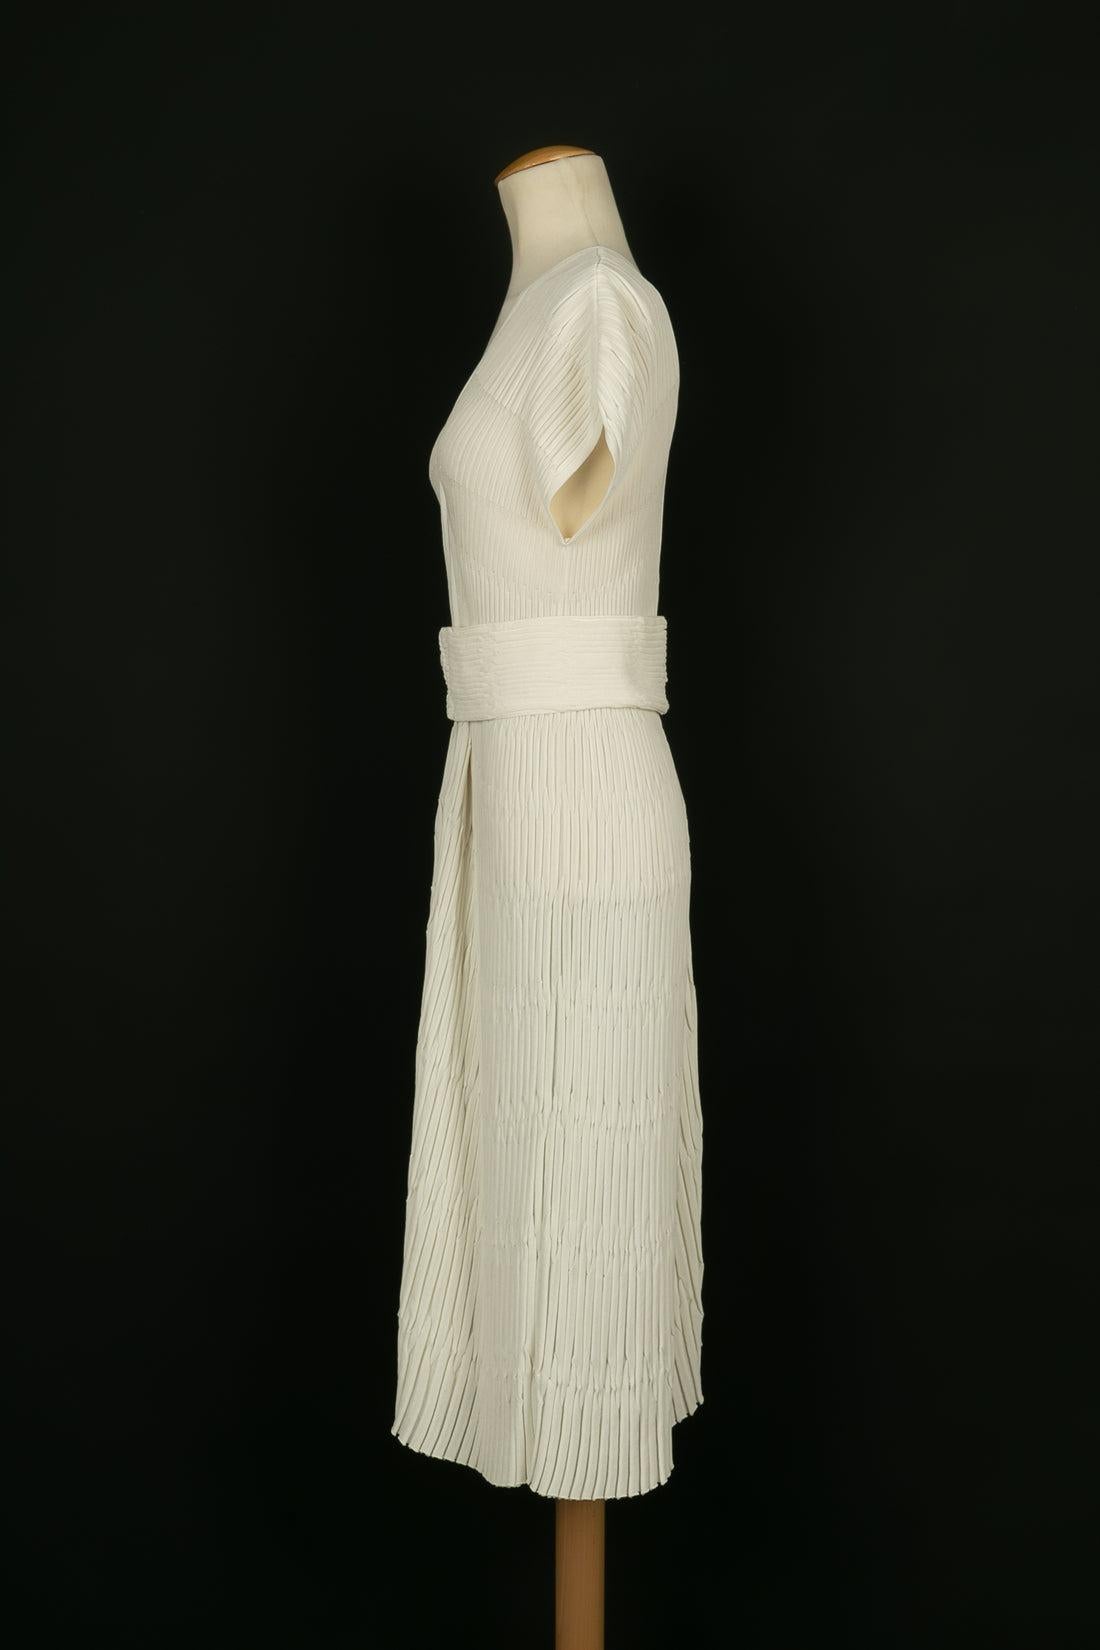 Chanel - (Made in France) Kleid aus weißer Baumwollmischung, Reißverschluss aus versilbertem Metall. Angegebene Größe 40FR.

Zusätzliche Informationen:
Zustand: Sehr guter Zustand
Abmessungen: Länge: 115 cm

Sellers Referenz: VR91